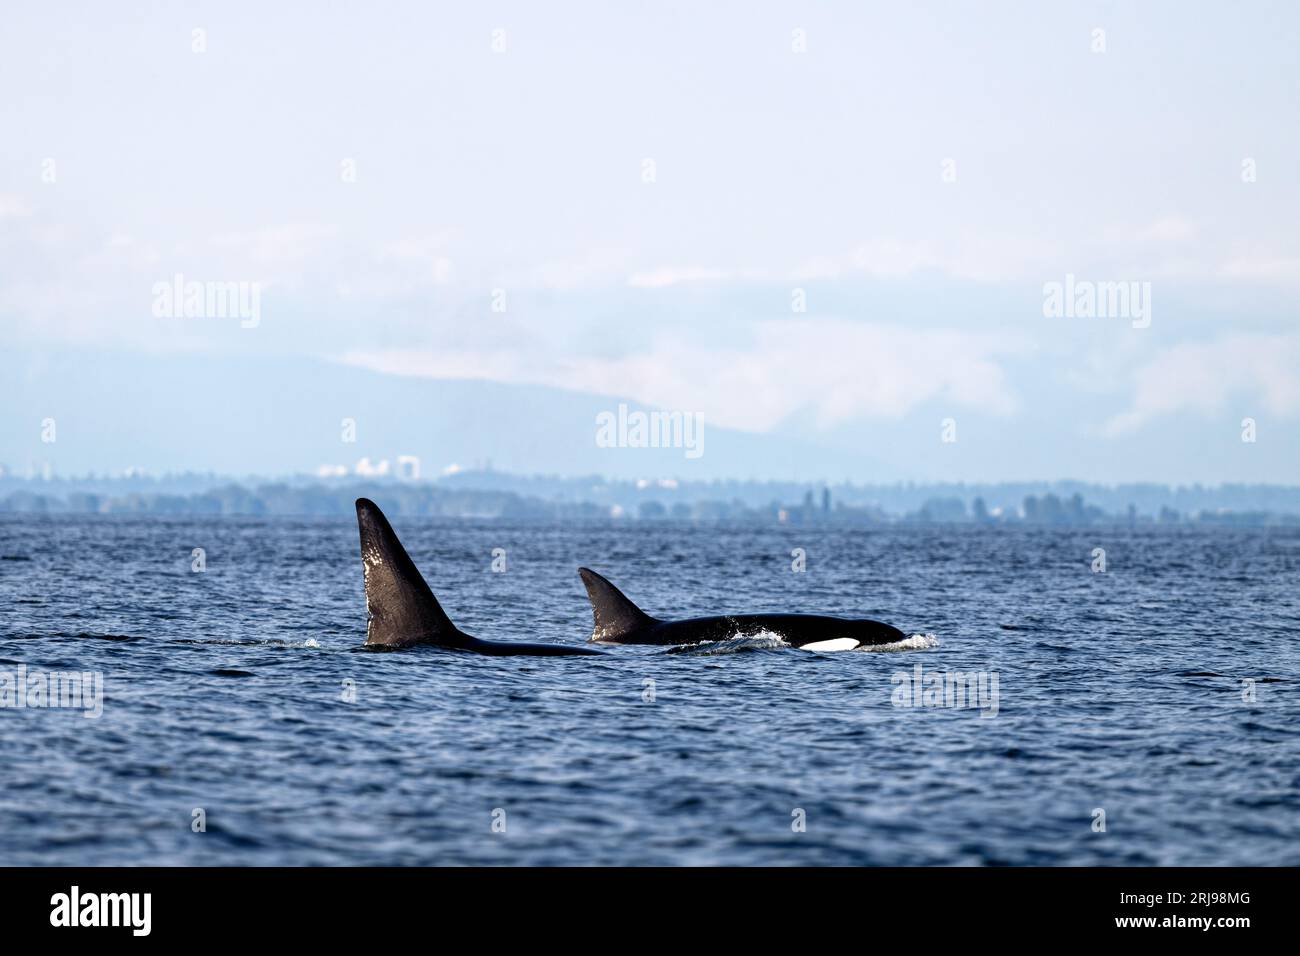 Le due orche assassine scivolano attraverso le tranquille acque dell'oceano. Texada Island, Canada. Foto Stock